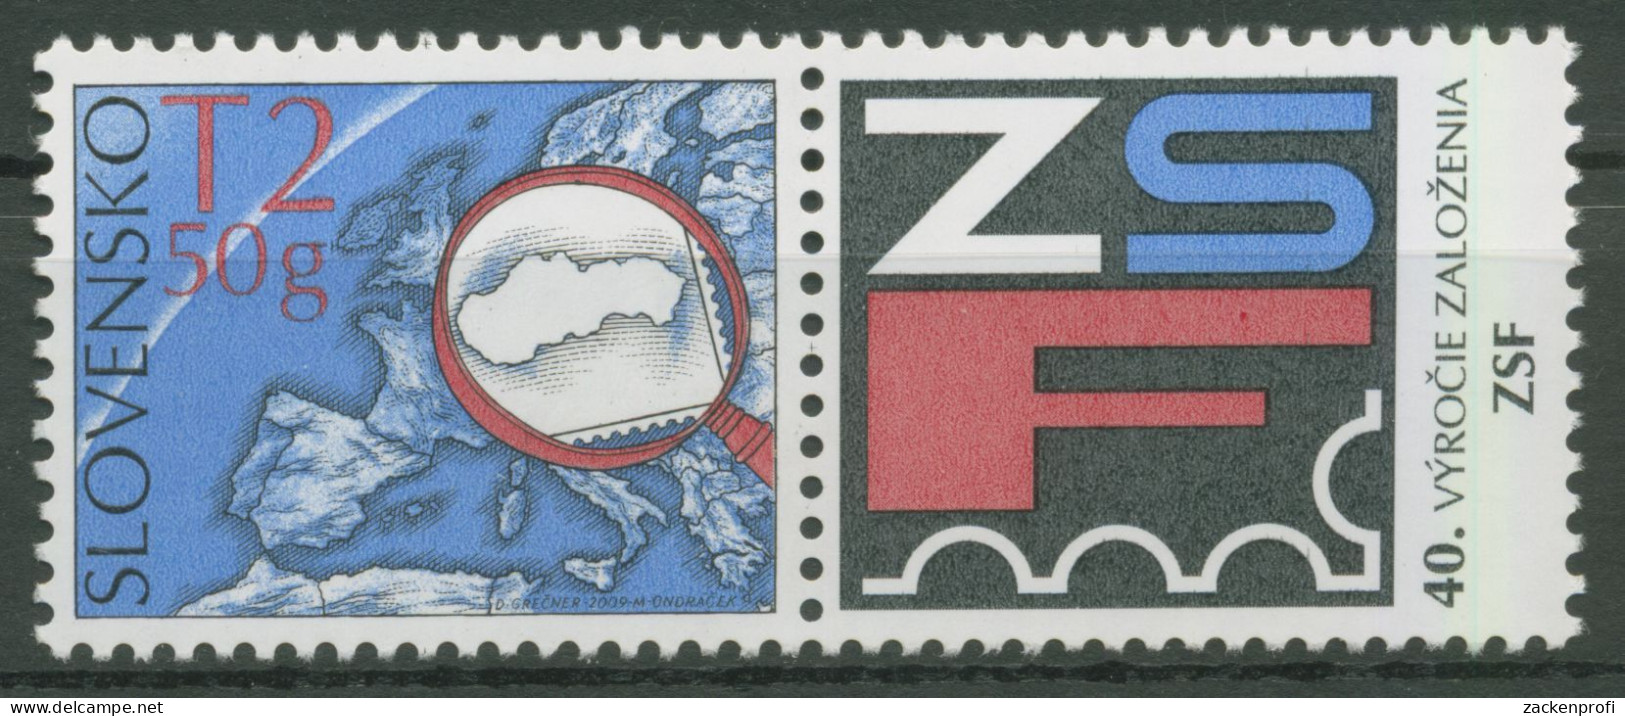 Slowakei 2009 Philatelistenverband 613 Zf Postfrisch - Ongebruikt